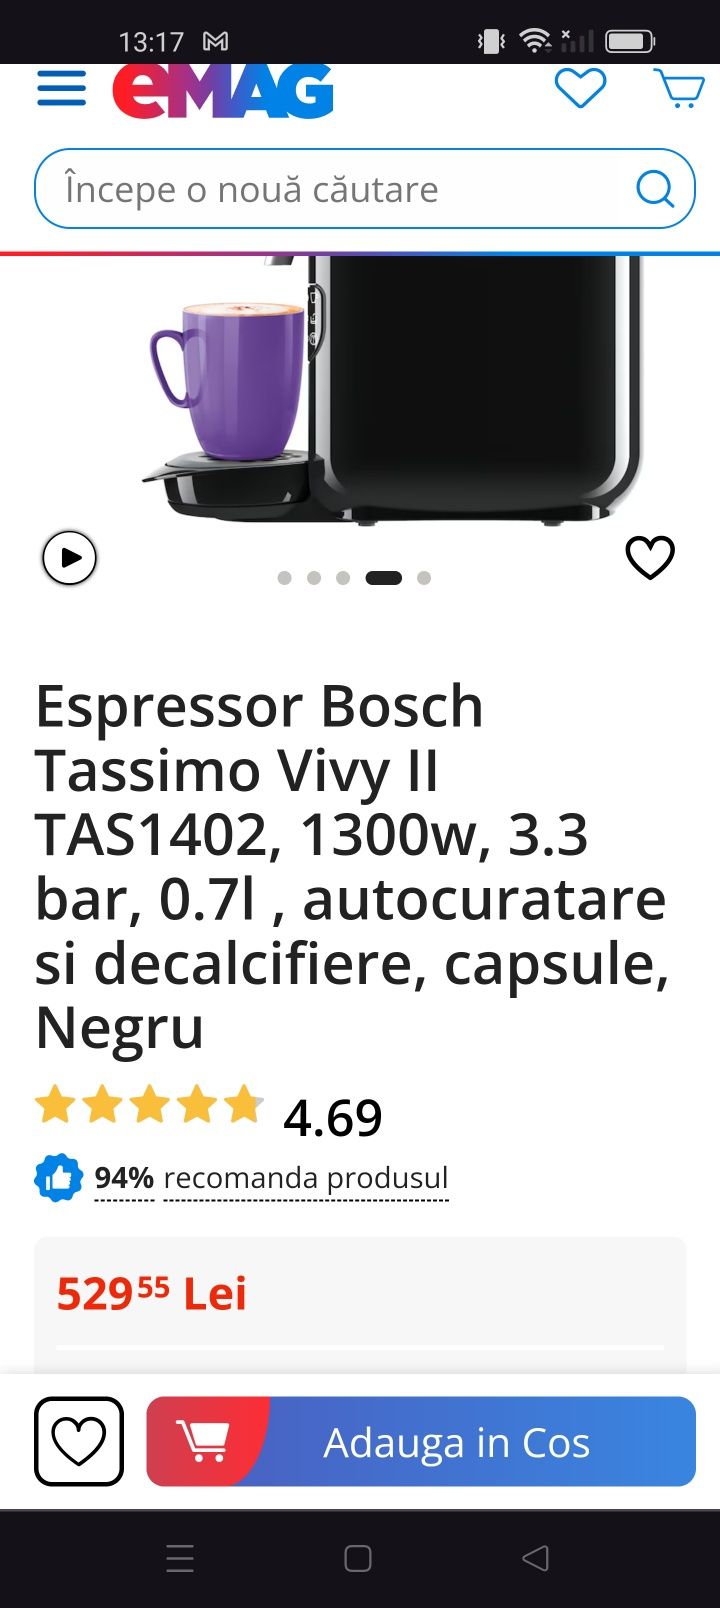 Vând aparat de cafea Bosch nu Philips